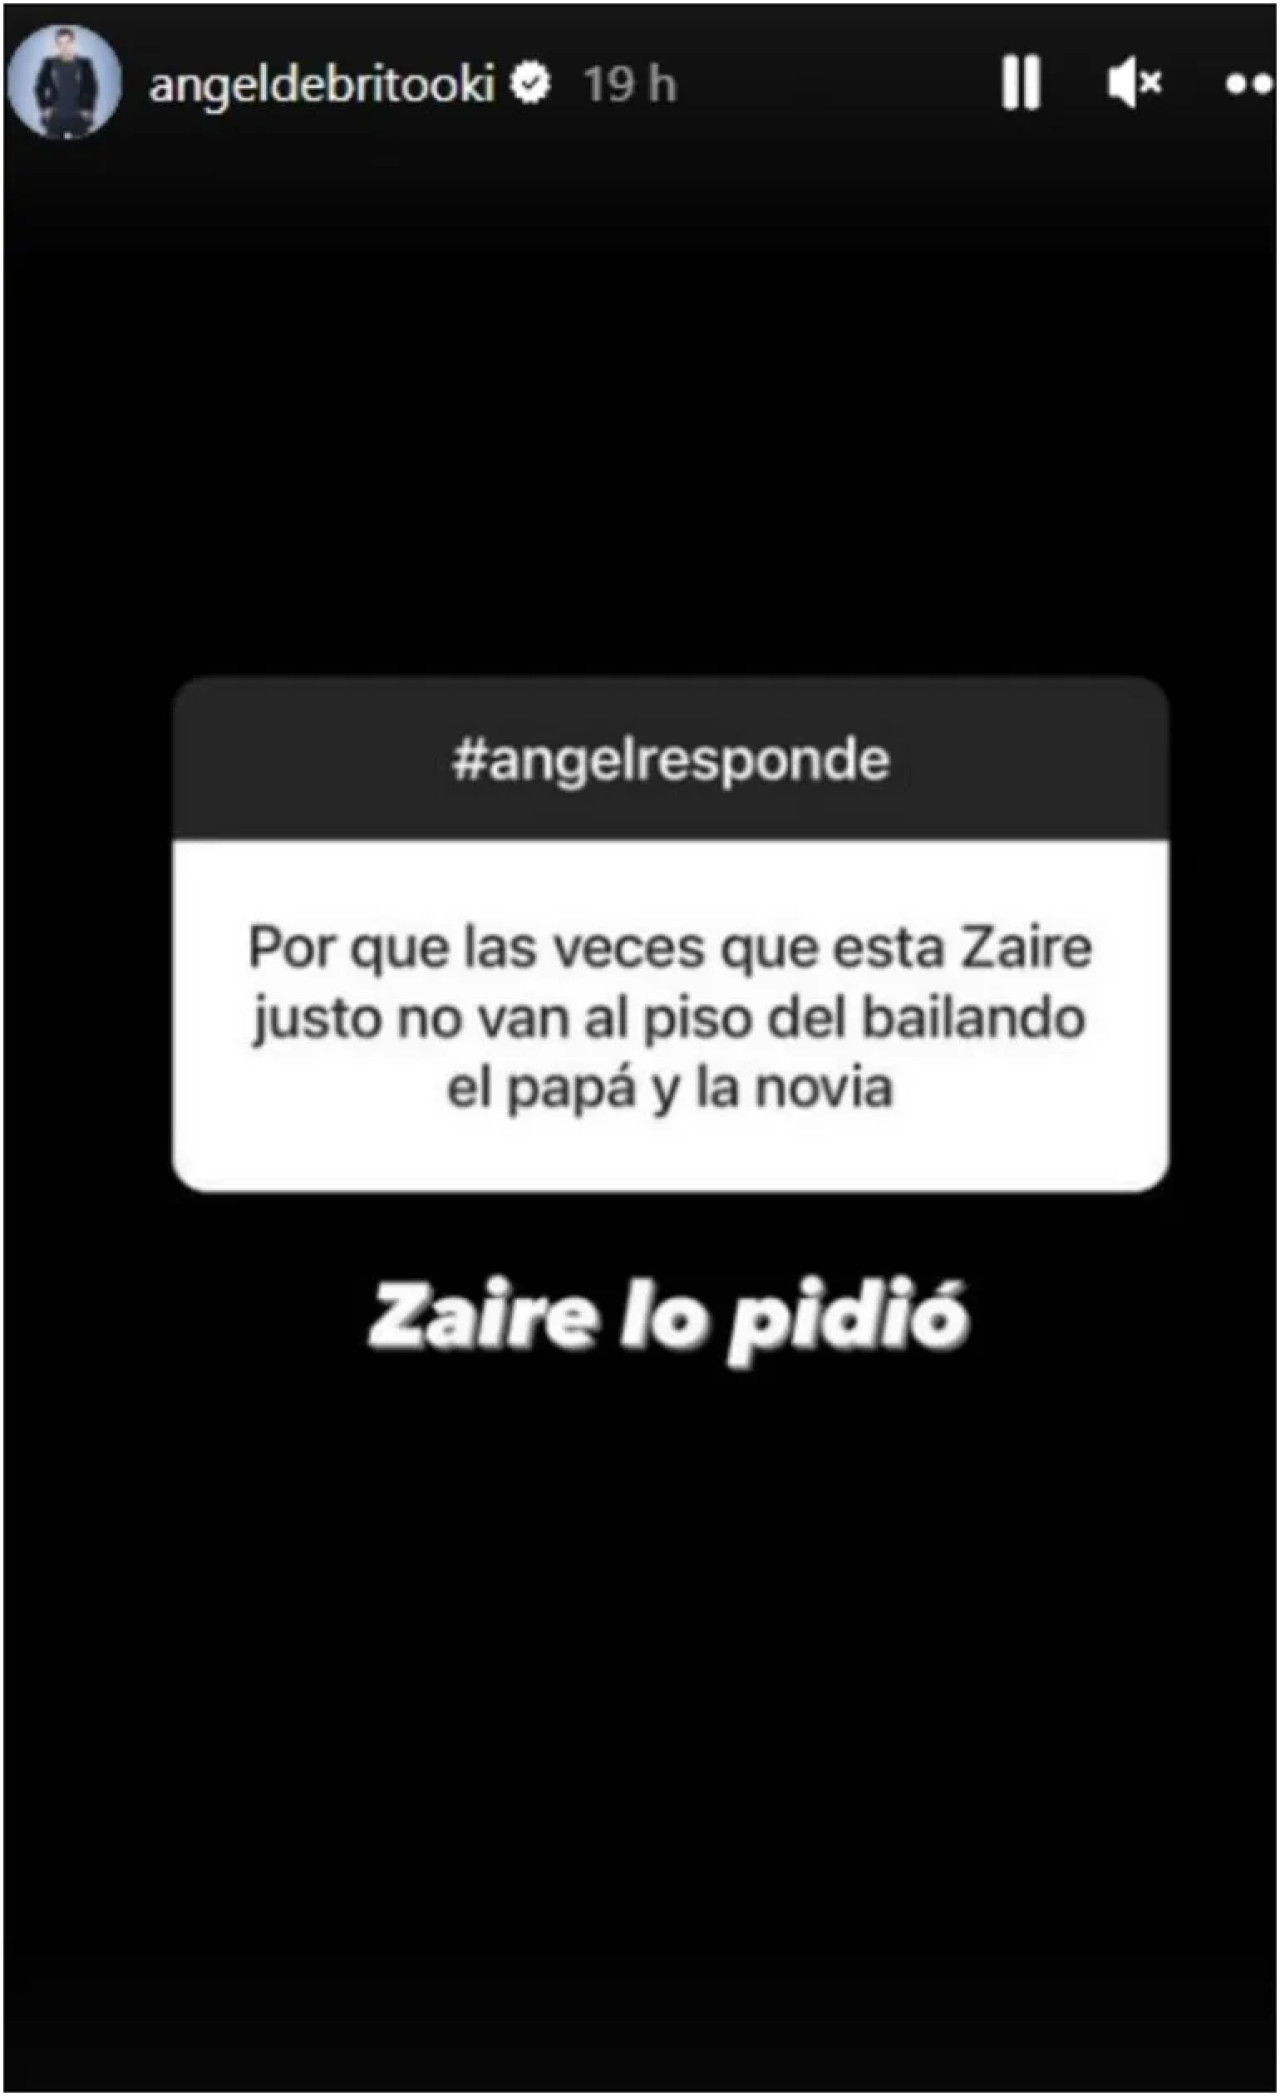 Respuesta de Ángel De Brito. Foto: Instagram @angeldebritooki